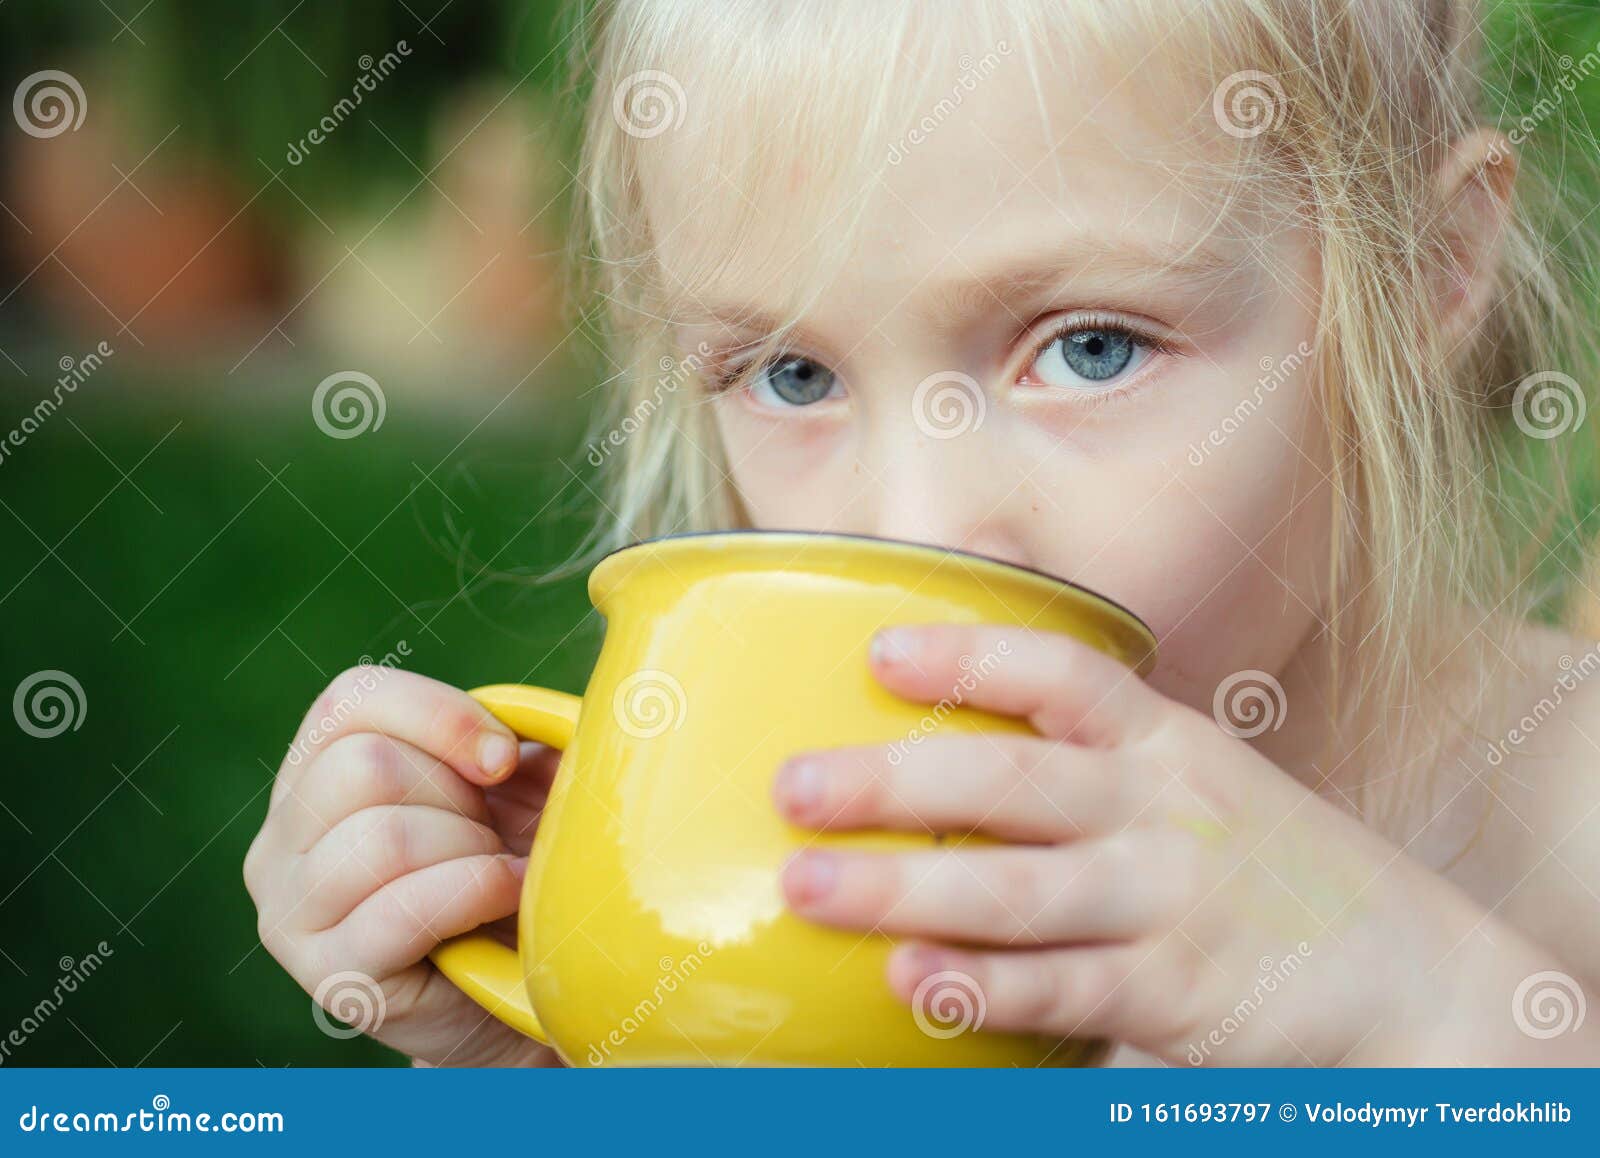 Una Tazza in Mano a Un Bambino Ragazza Che Beve Qualcosa Bambini All'aperto  in Natura Immagine Stock - Immagine di libero, attività: 161693797